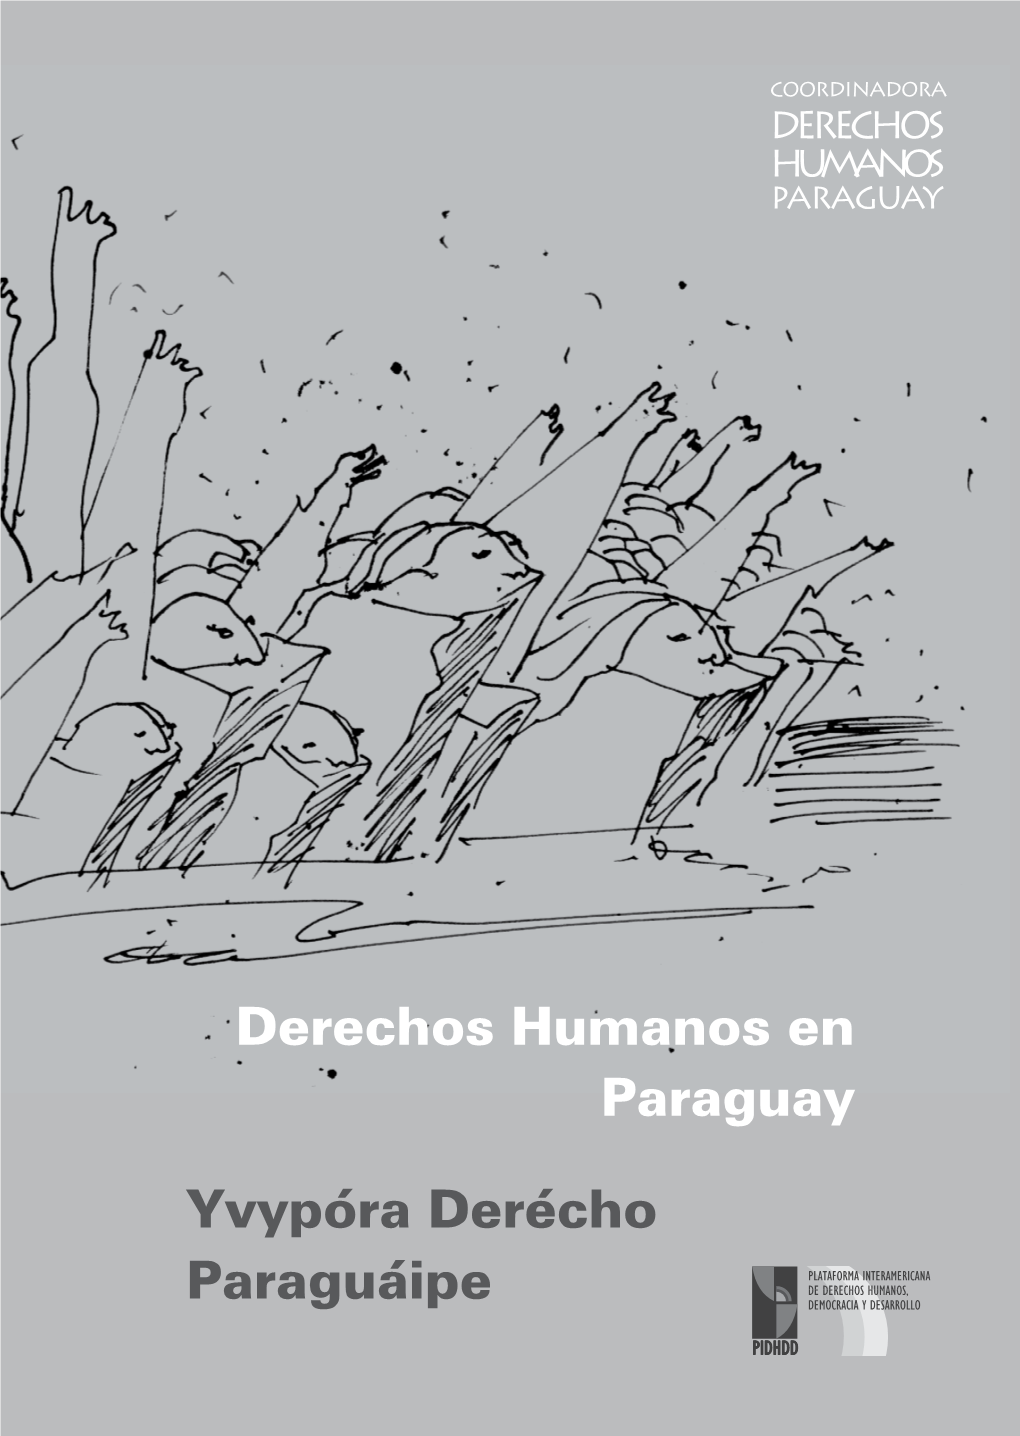 Derechos Humanos Paraguay 2009